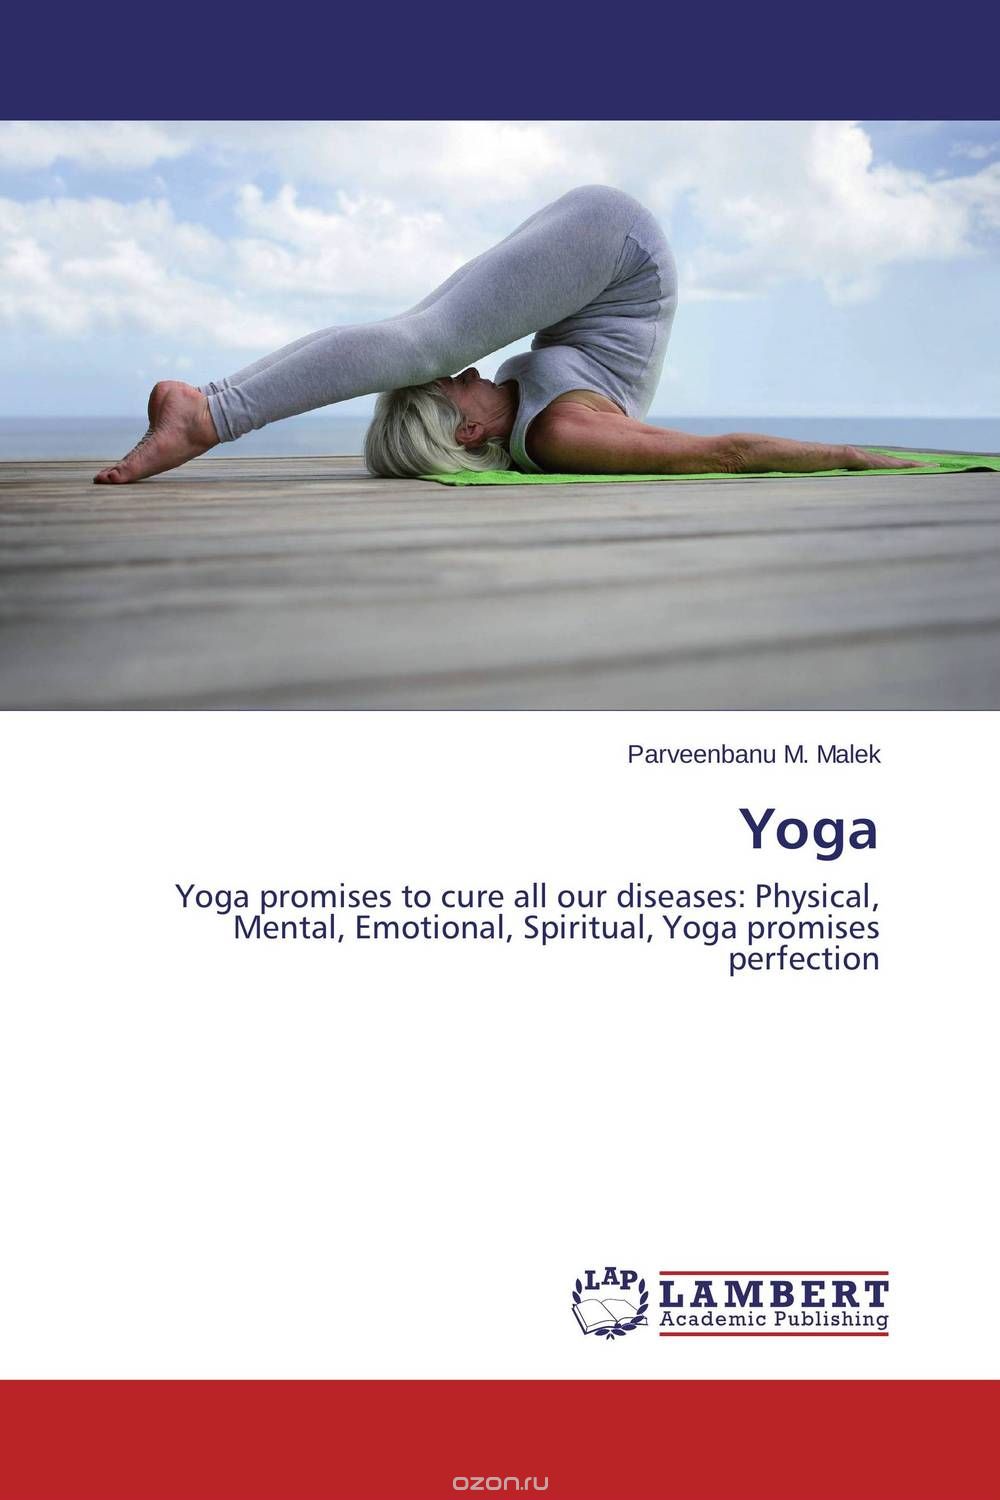 Скачать книгу "Yoga"